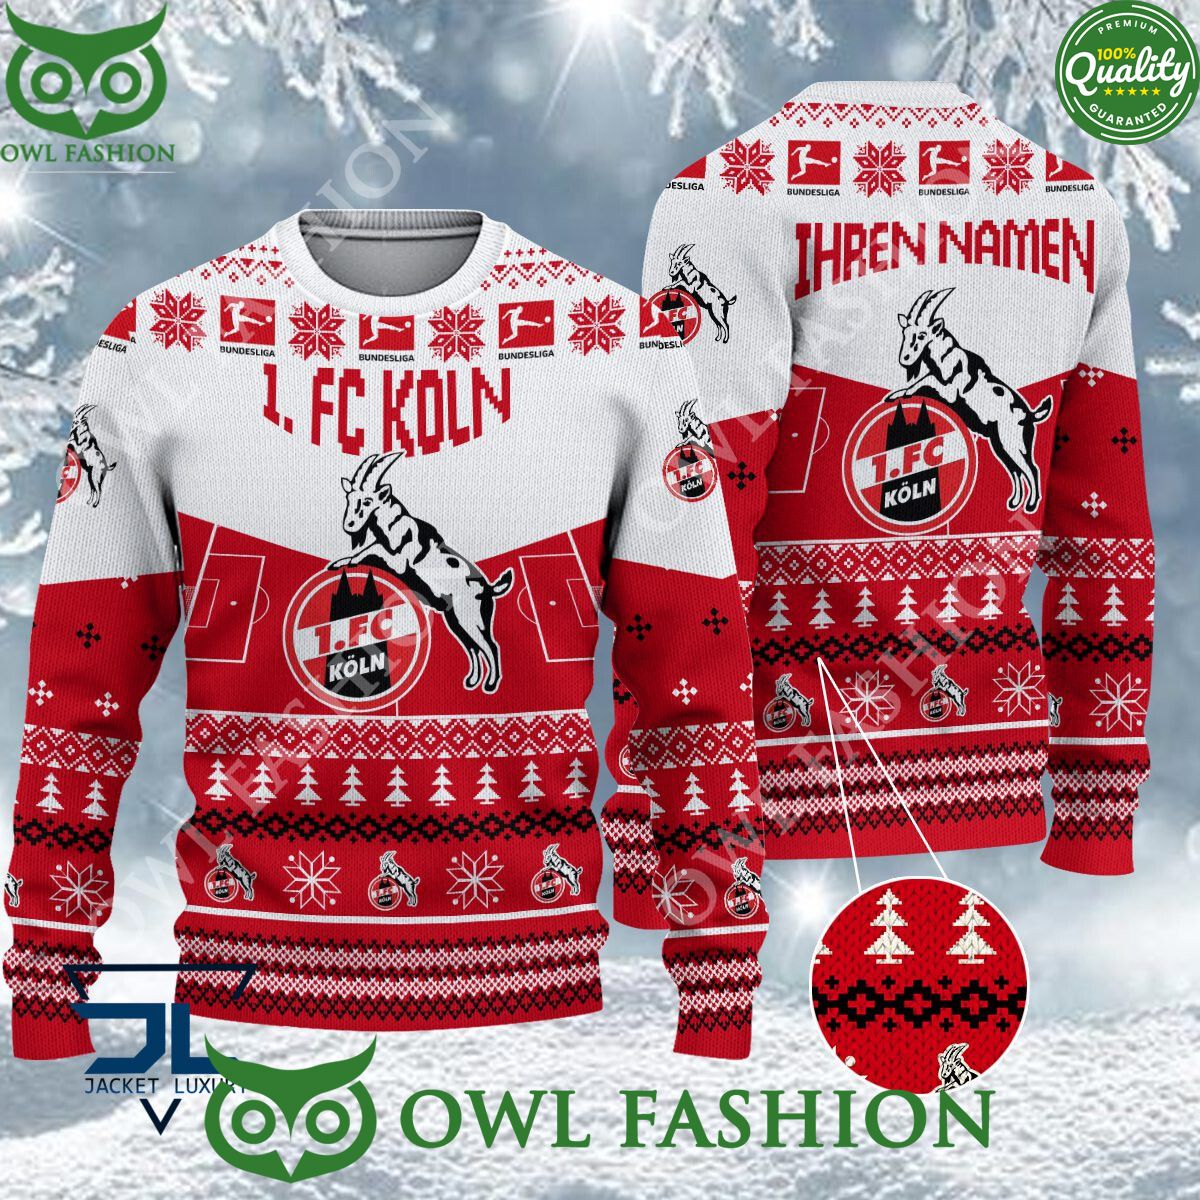 1 fc koln limited for bundesliga fans ugly sweater jumper 1 fF4B1.jpg